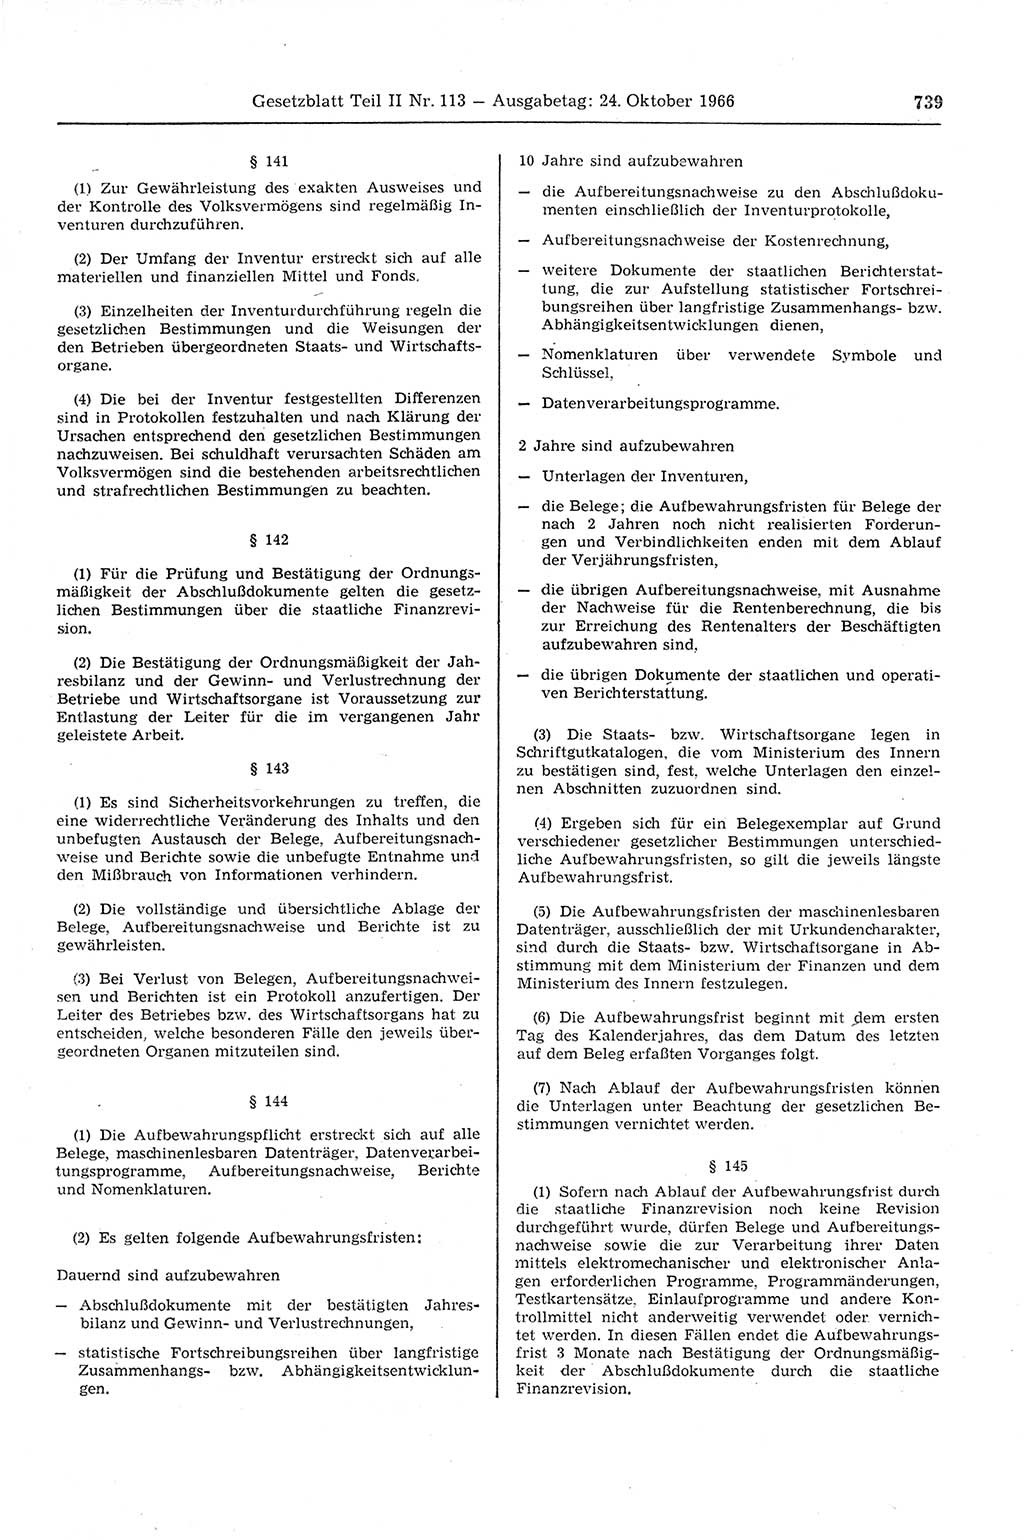 Gesetzblatt (GBl.) der Deutschen Demokratischen Republik (DDR) Teil ⅠⅠ 1966, Seite 739 (GBl. DDR ⅠⅠ 1966, S. 739)